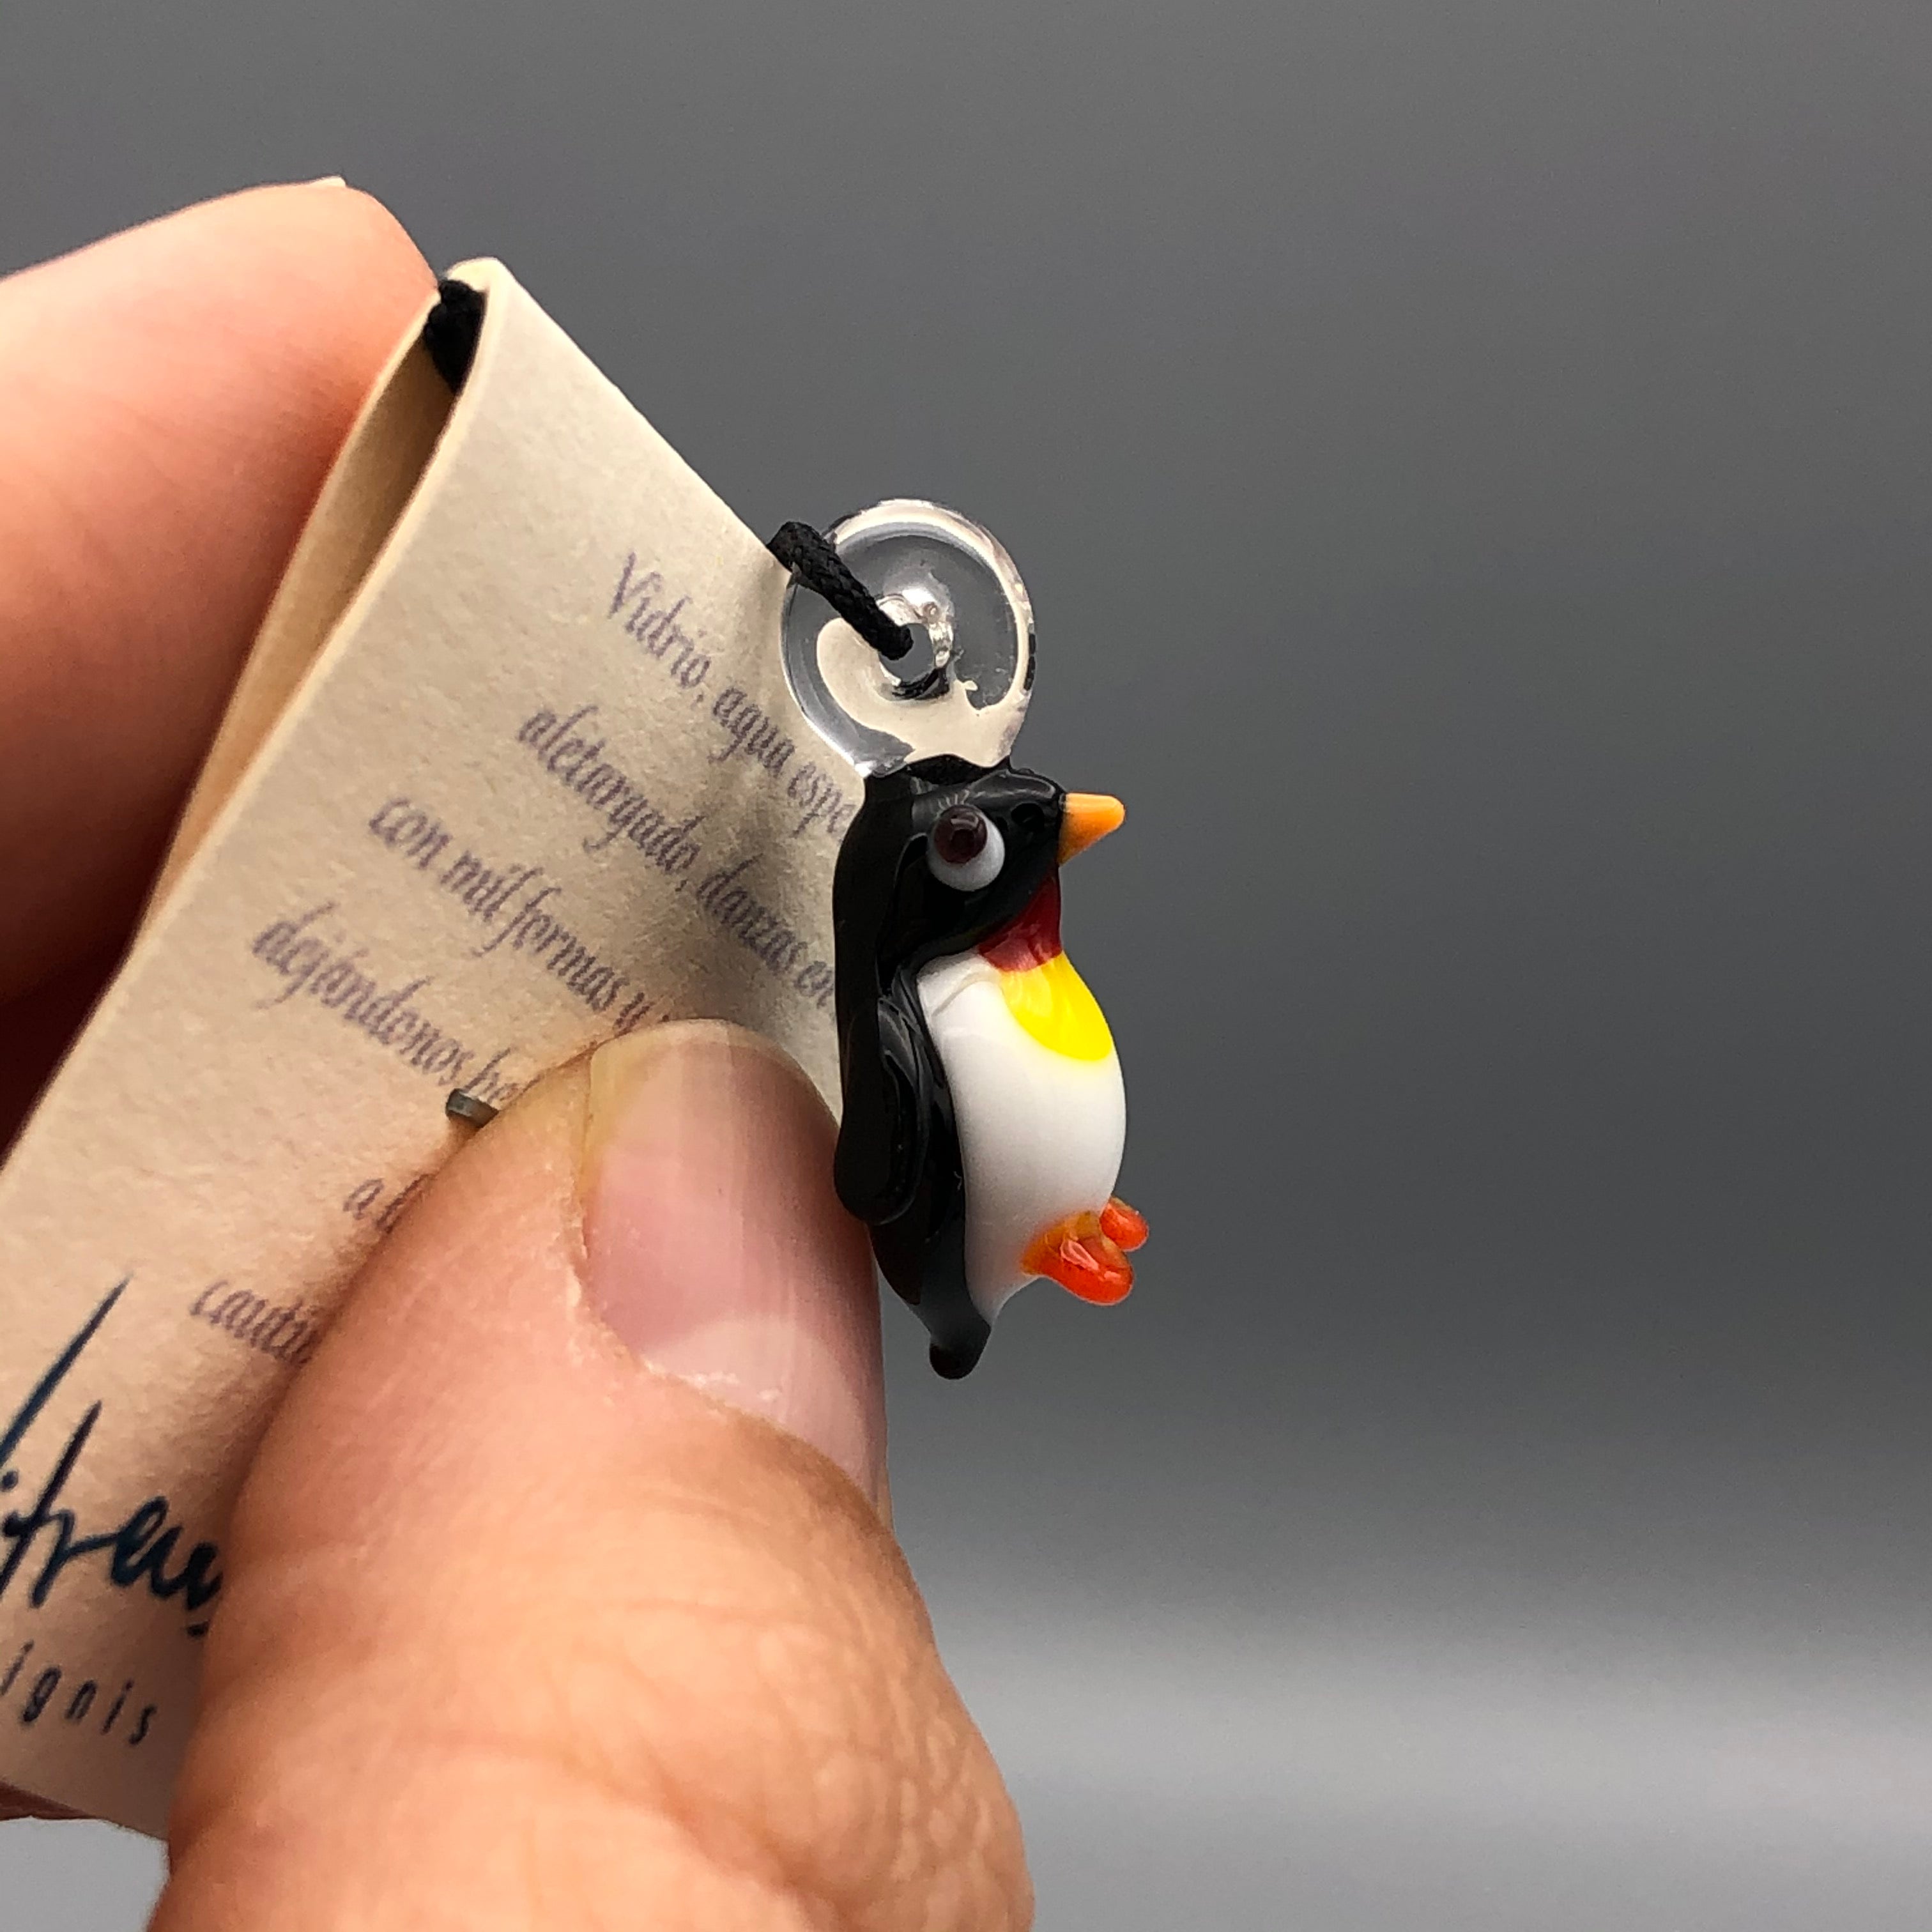 Colgante de Pingüino